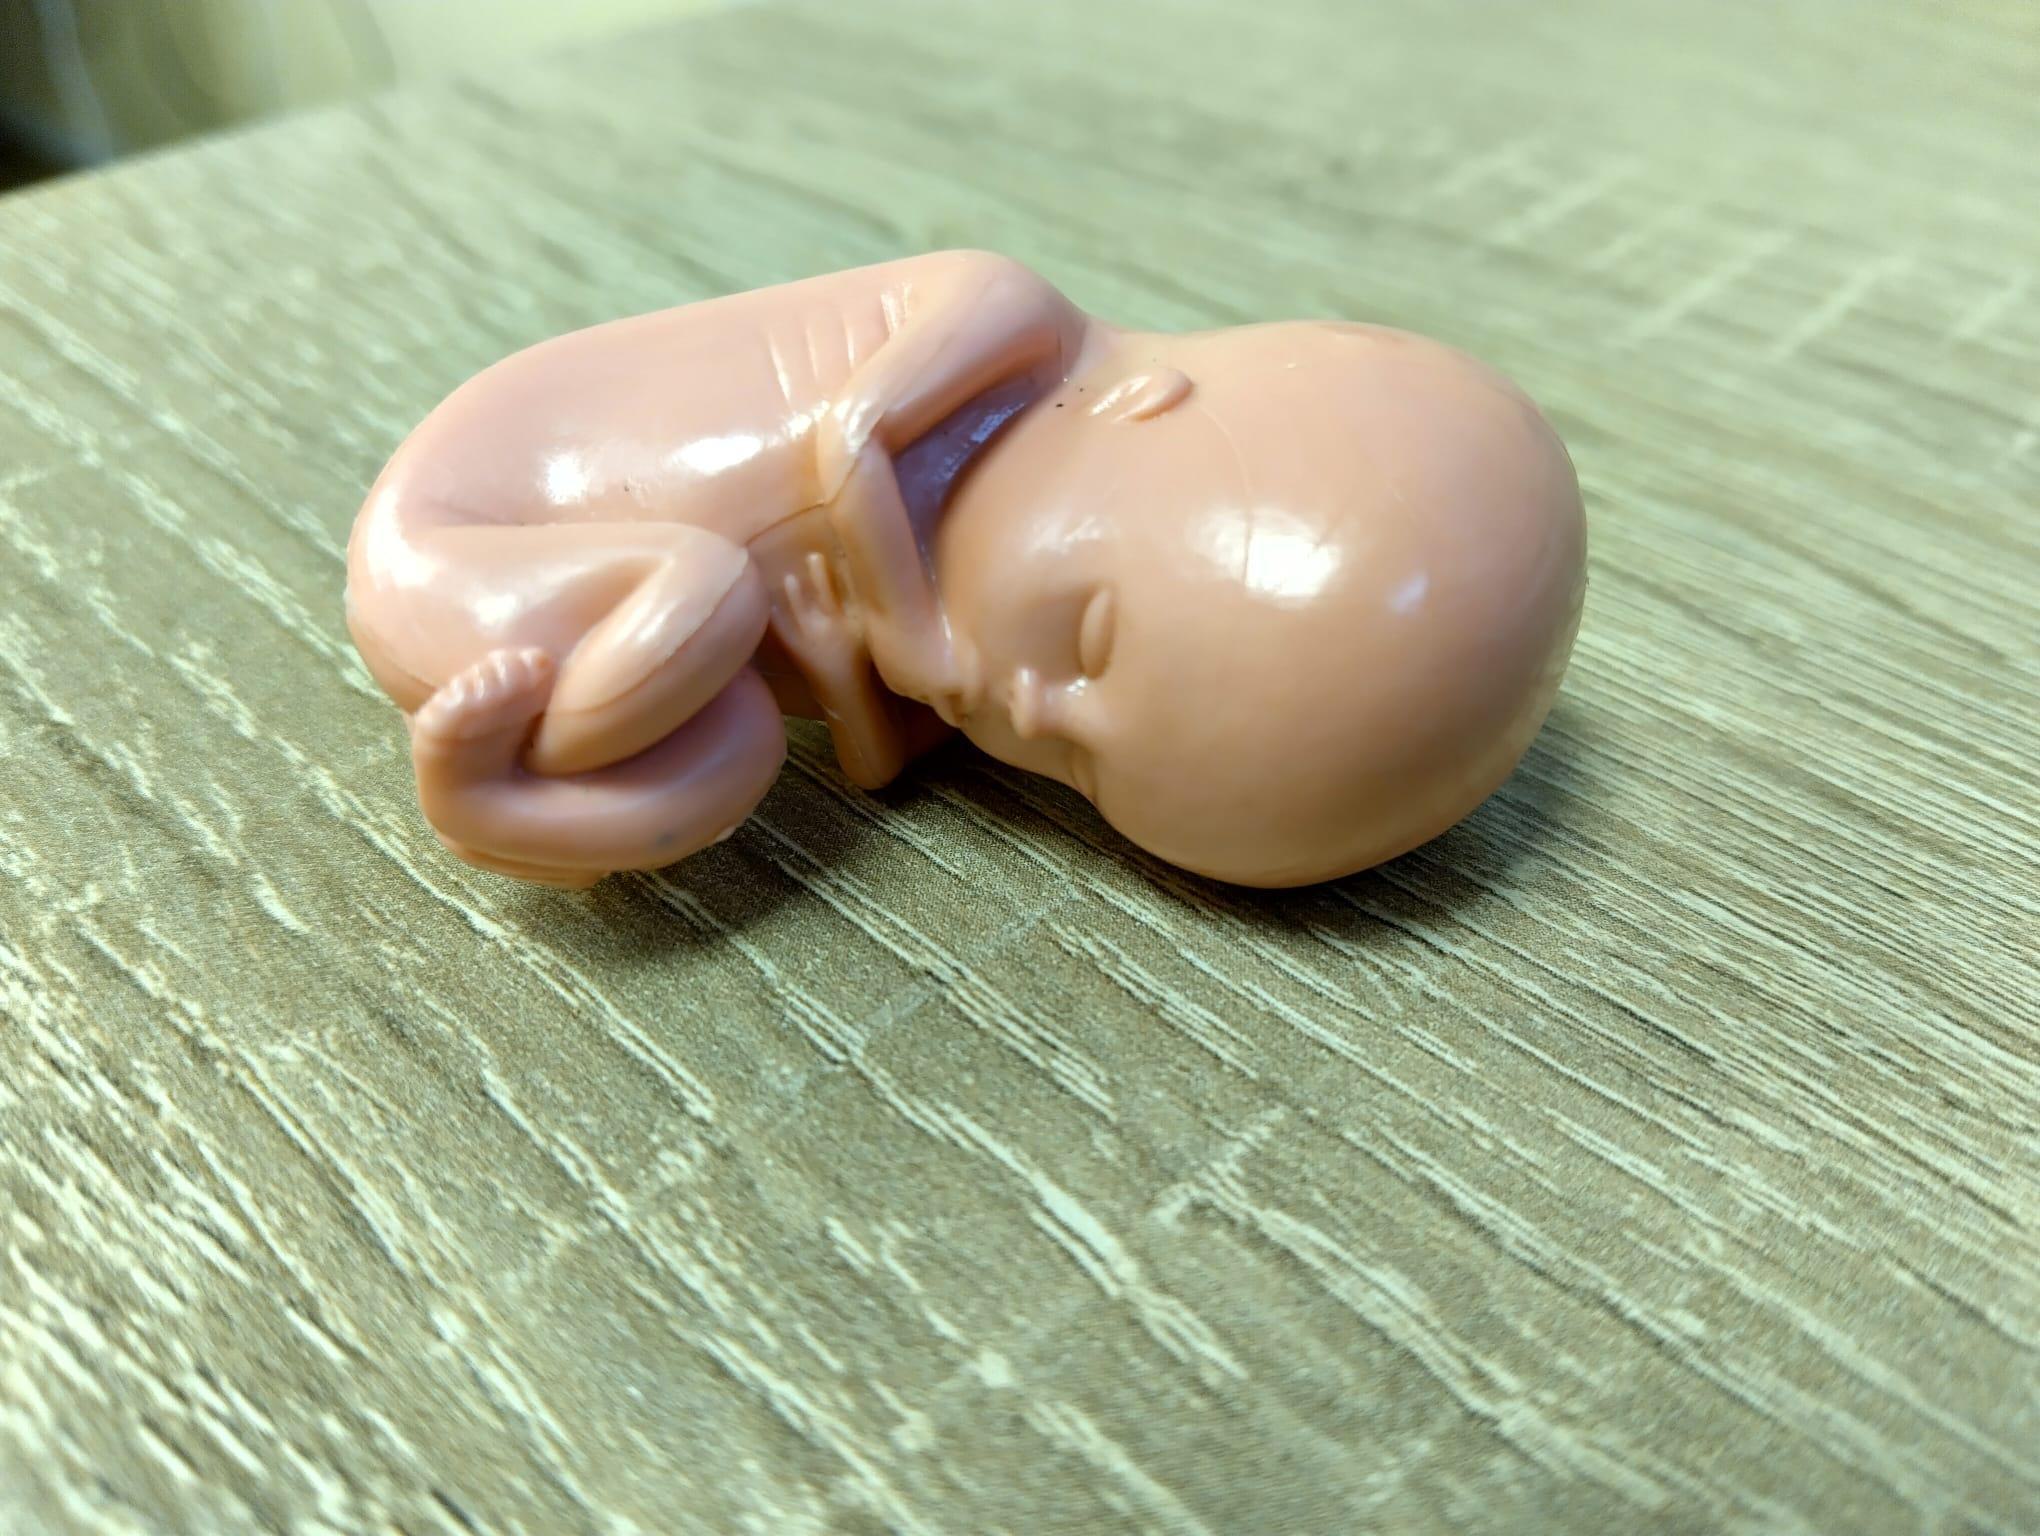 Positieve reacties op pro-life poppetje tonen kentering publieke opinie aan over abortus